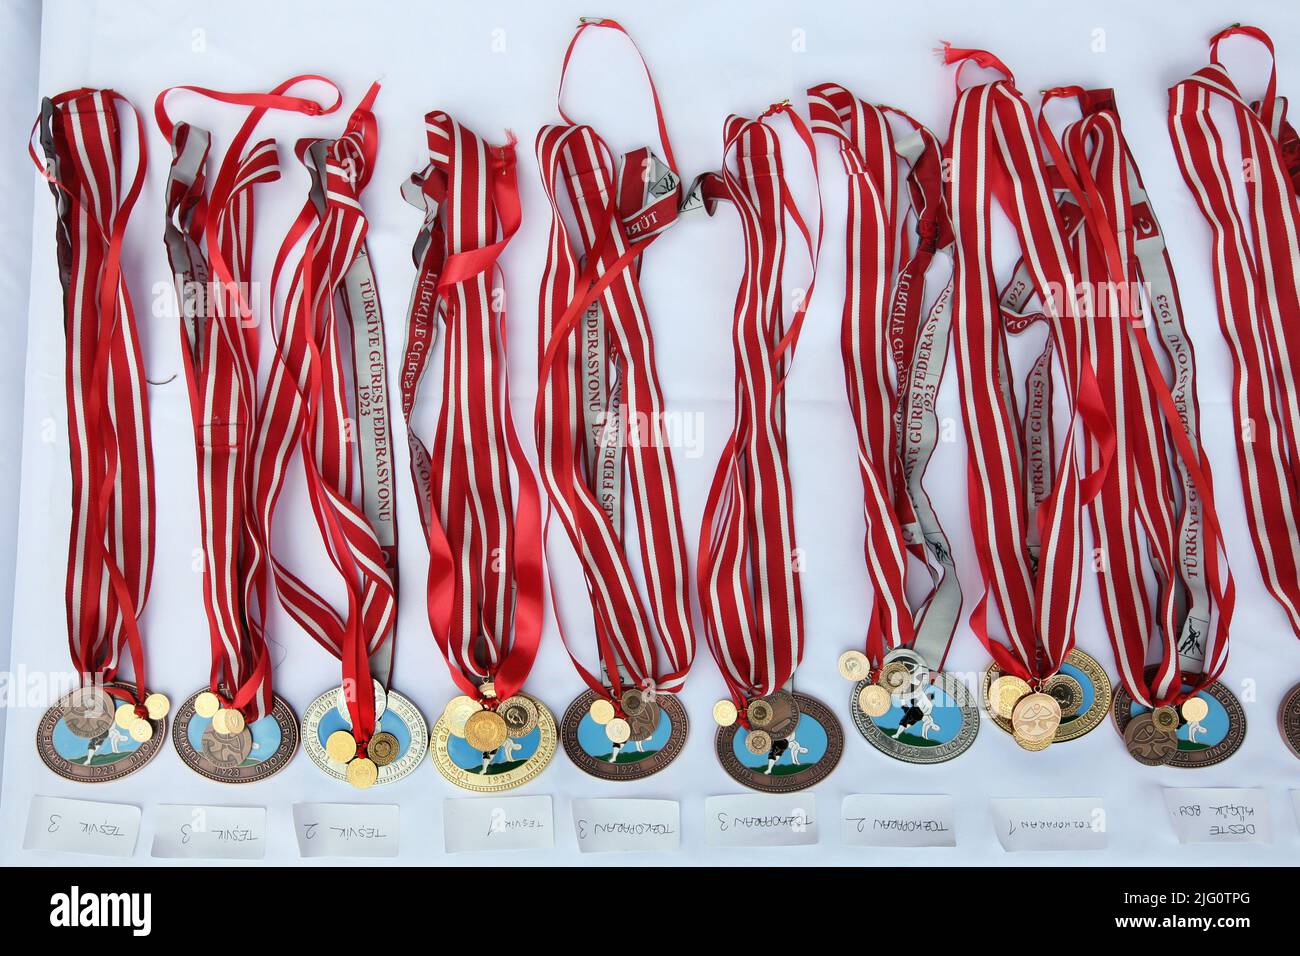 Kırkpınar (Turkish Oil Wrestling). Medals for winners pictured during the 648th Kırkpınar Tournament in Edirne, Turkey, on 5 July 2009. Stock Photo